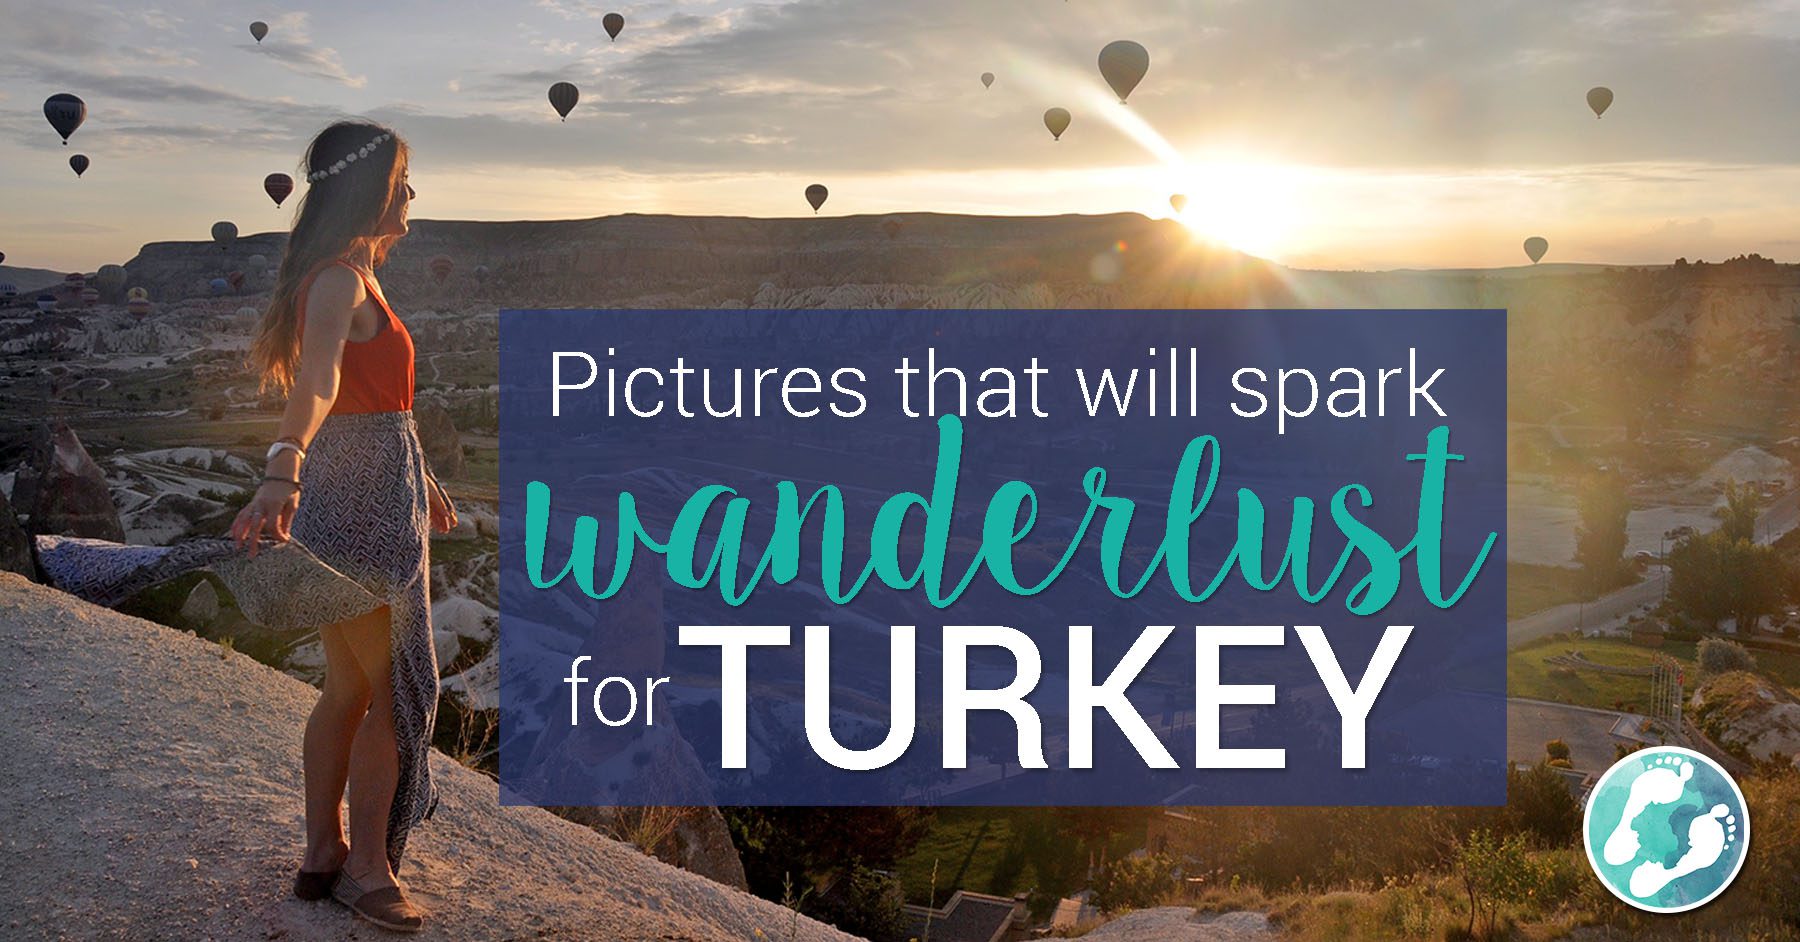 这些照片会激发对土耳其的旅行欲望